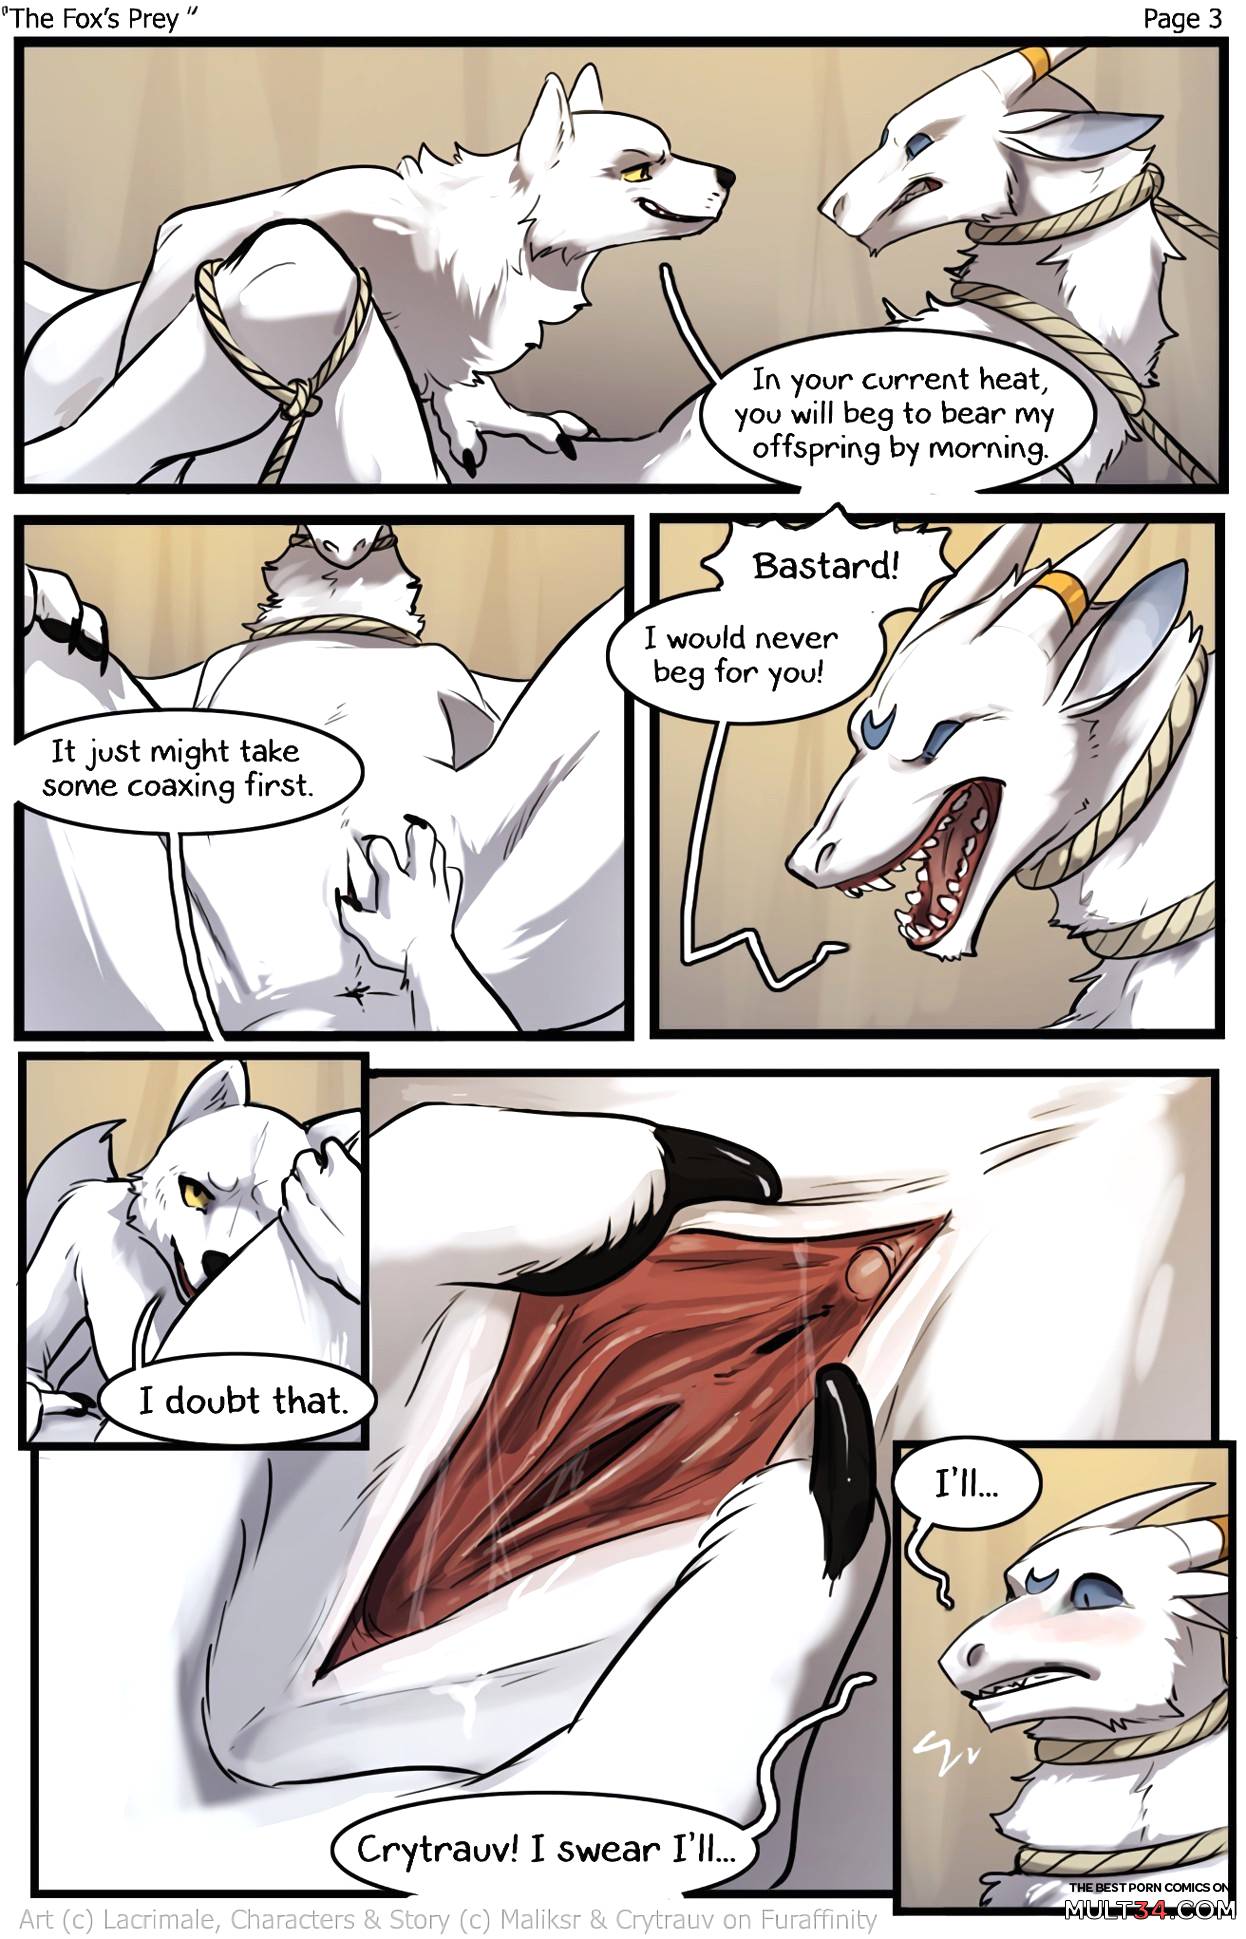 The Fox's prey page 3